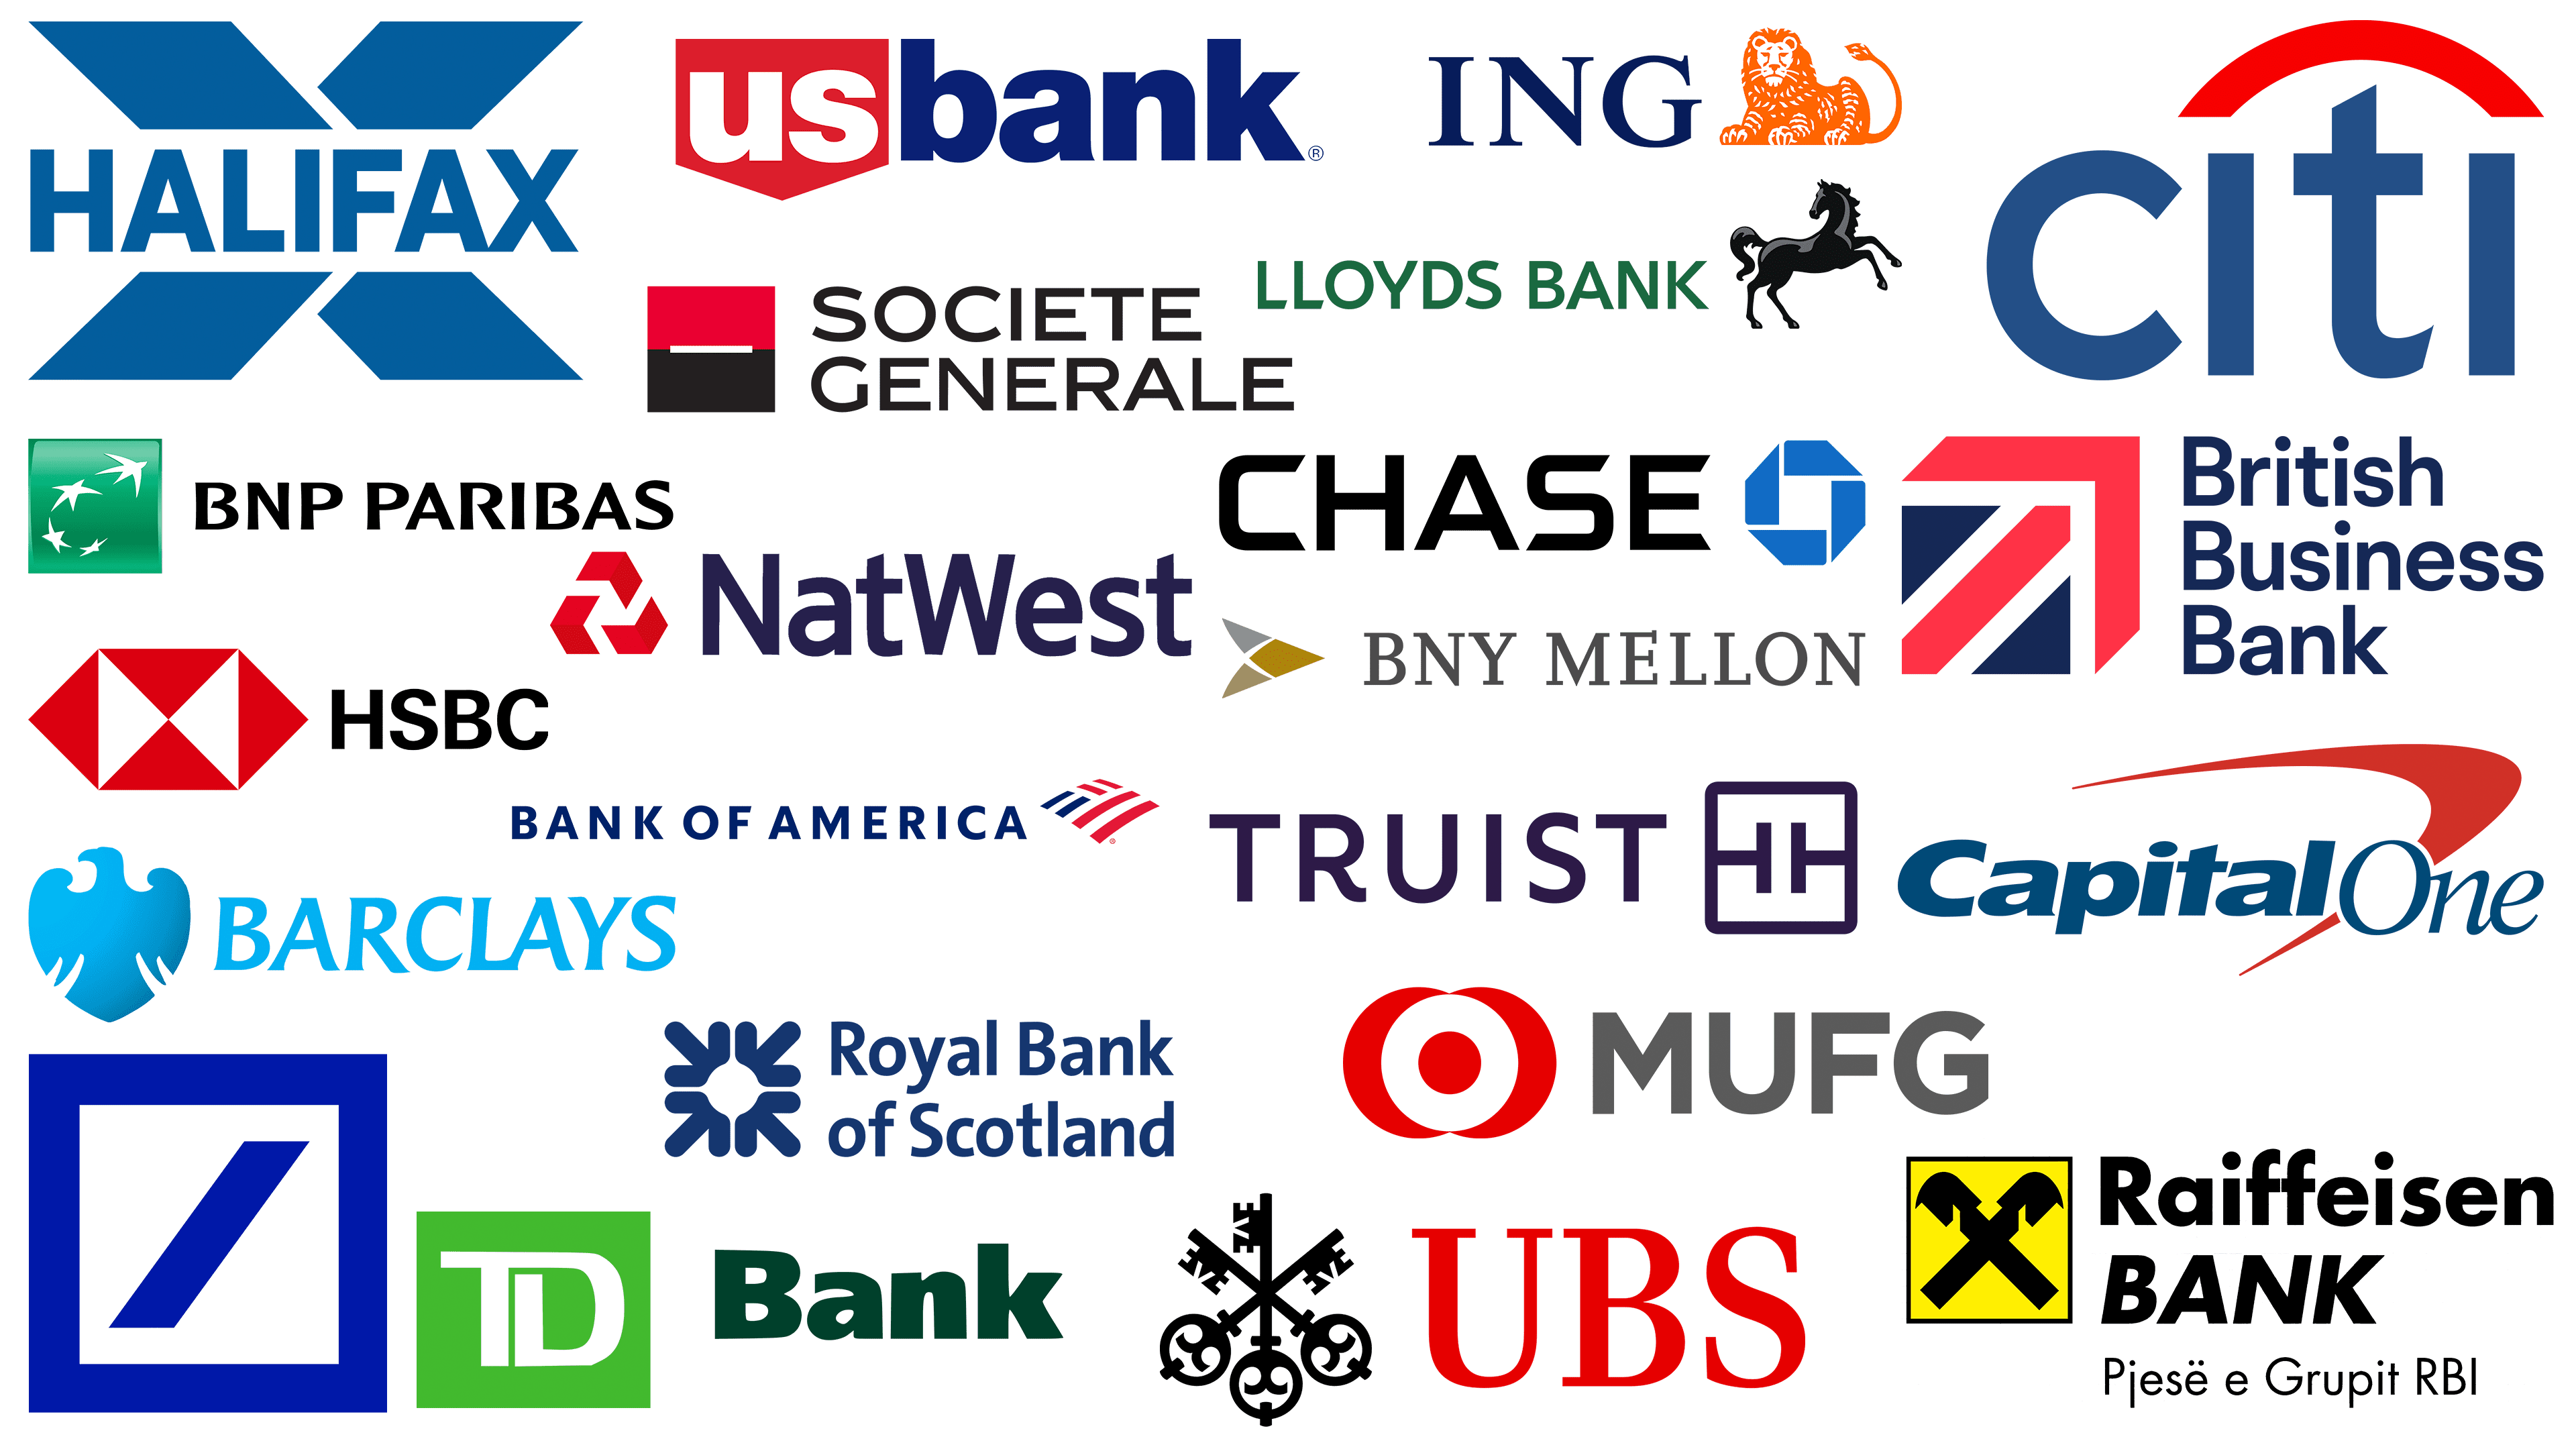 bank logos and names